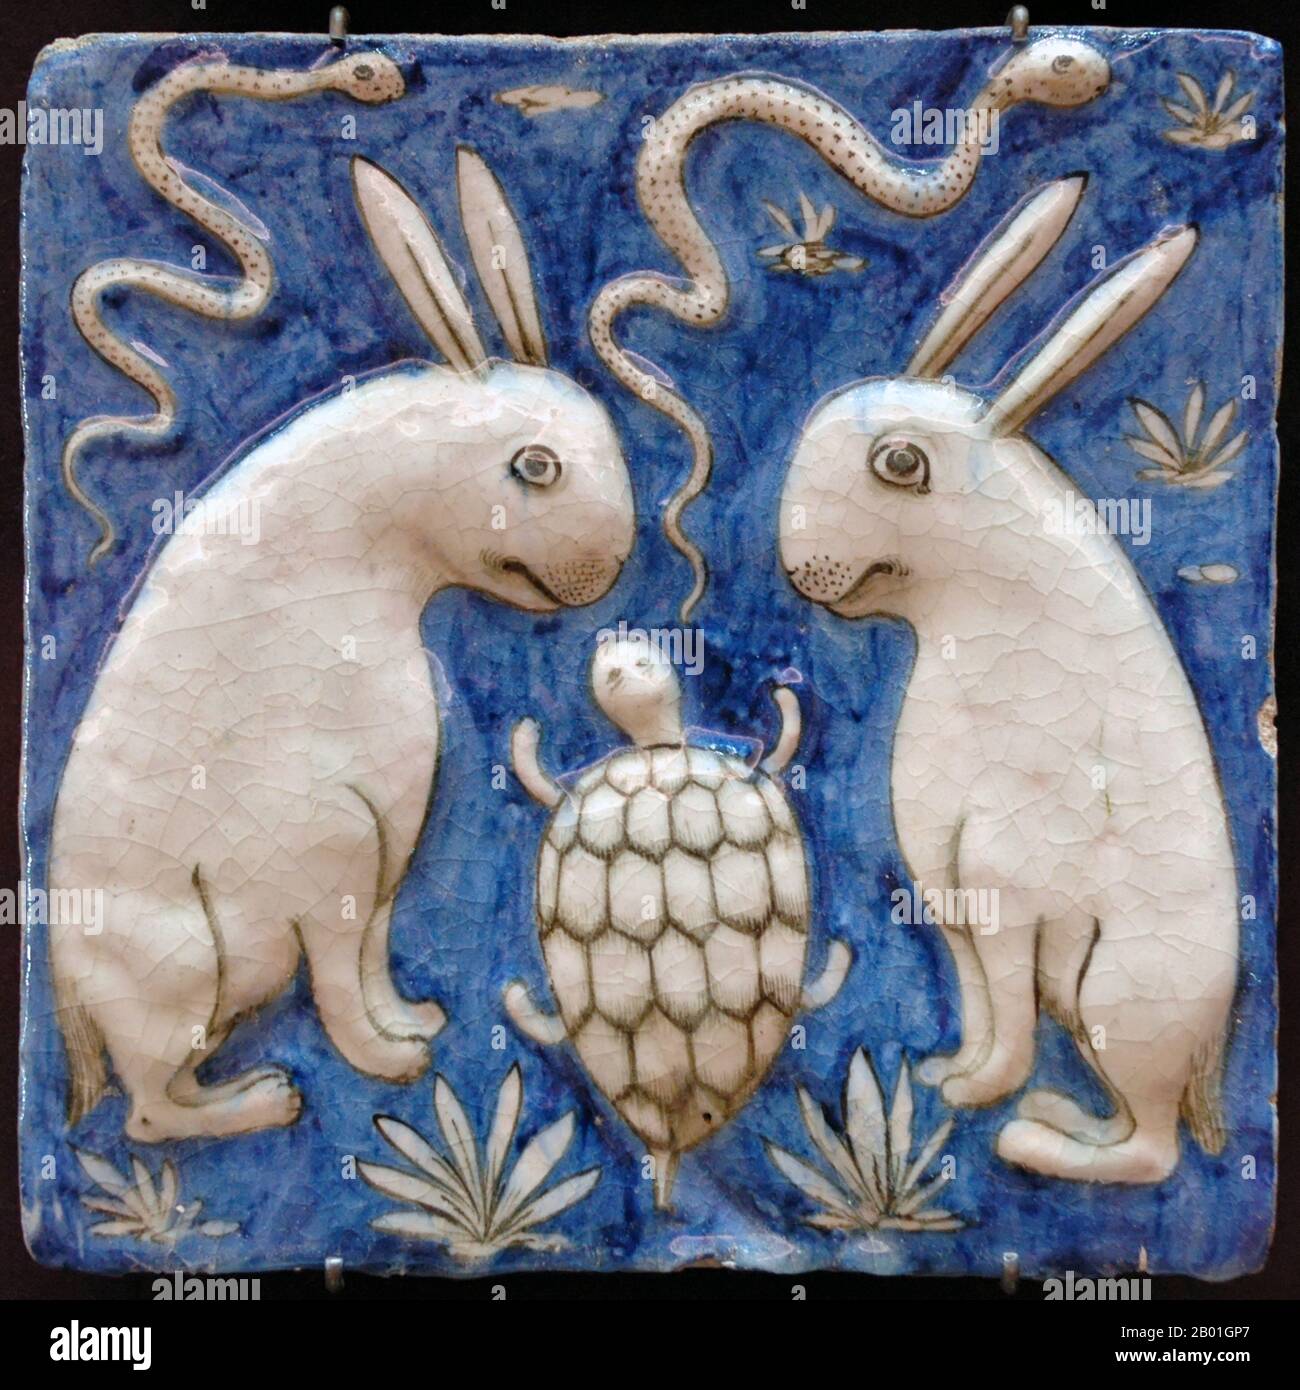 Iran/Persia: Una piastrella di ceramica con due conigli, due serpenti e una tartaruga. Illustrazione di Zakarīyā ibn Muḥammad al-Qazwīnī, «Ajā’ib al-makhlūqāt wa-gharā’ib al-mawjūdāt (meraviglie delle cose create e aspetti miracolosi delle cose esistenti, 1537-1538 d.C.). Decorazioni in terracotta, modellate e dipinte sotto smalto, Abu Yahya Zakariya 'ibn Muhammad al-Qazwini (1203-1283), è stato un medico, astronomo, geografo e scrittore di proto-fantascienza persiano. Foto Stock